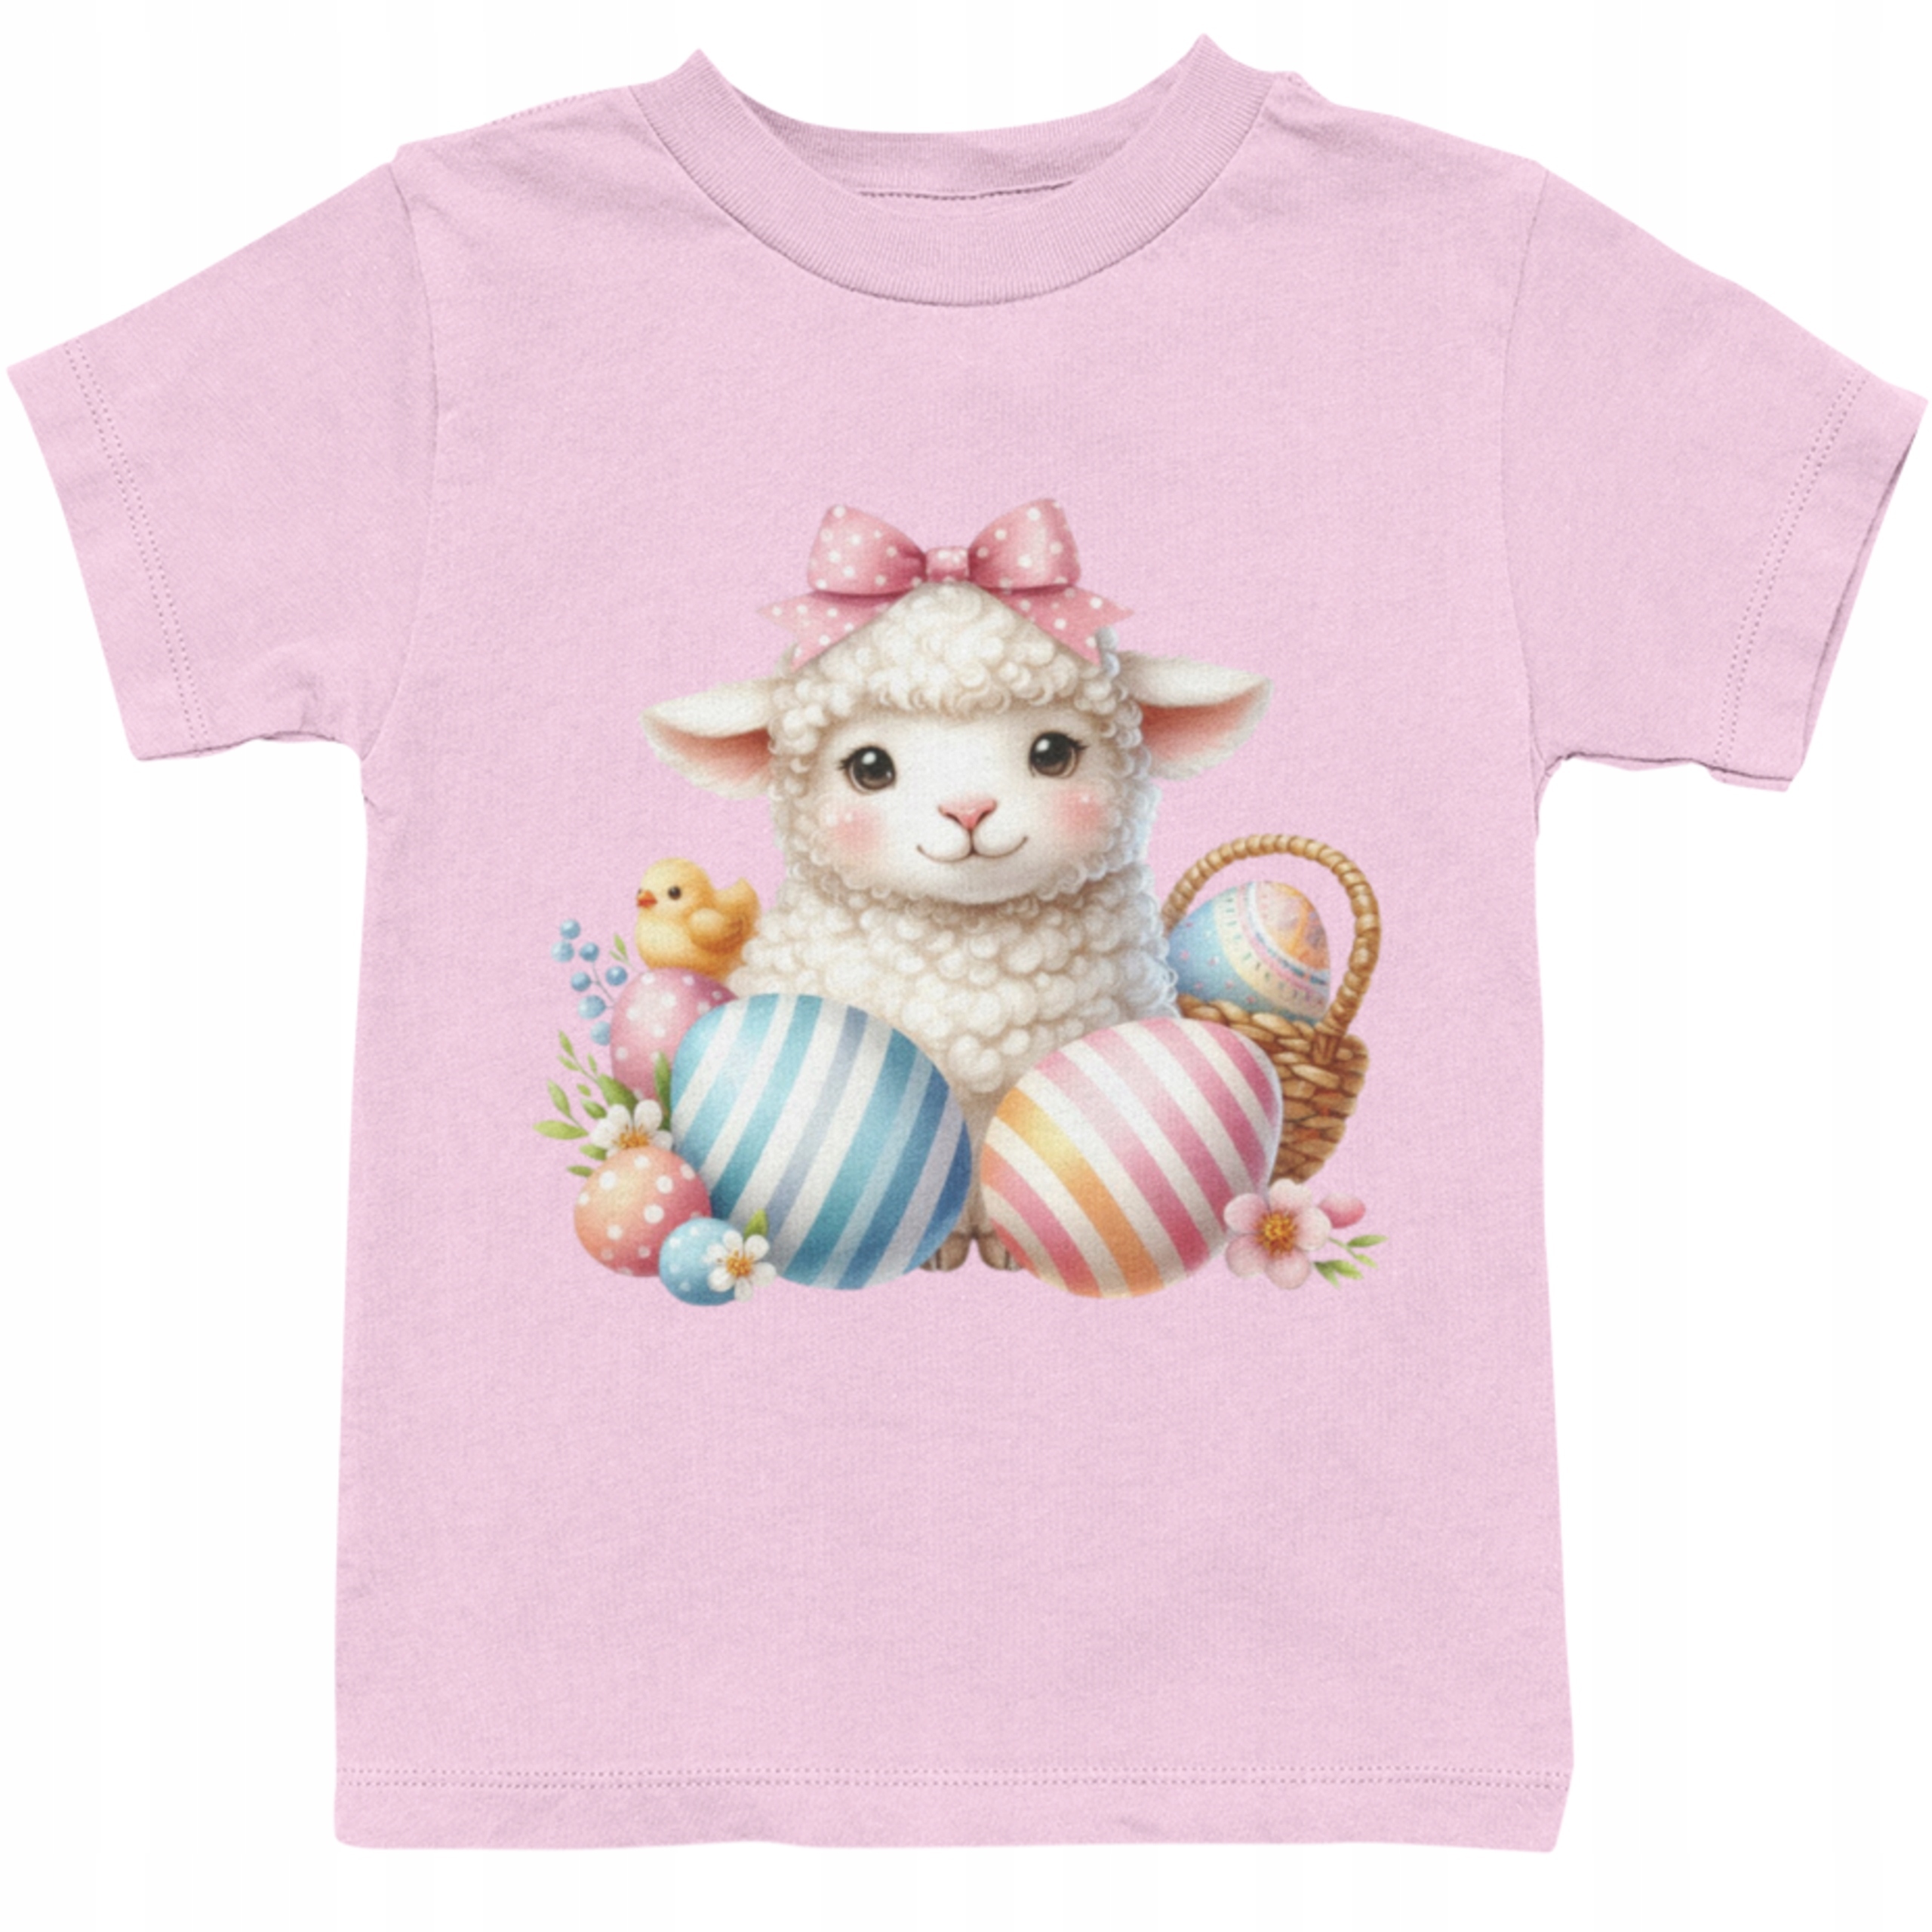 Detské tričko na veľkú noc veľkonočné vajíčka s zajačikom ovečkou s baránkom